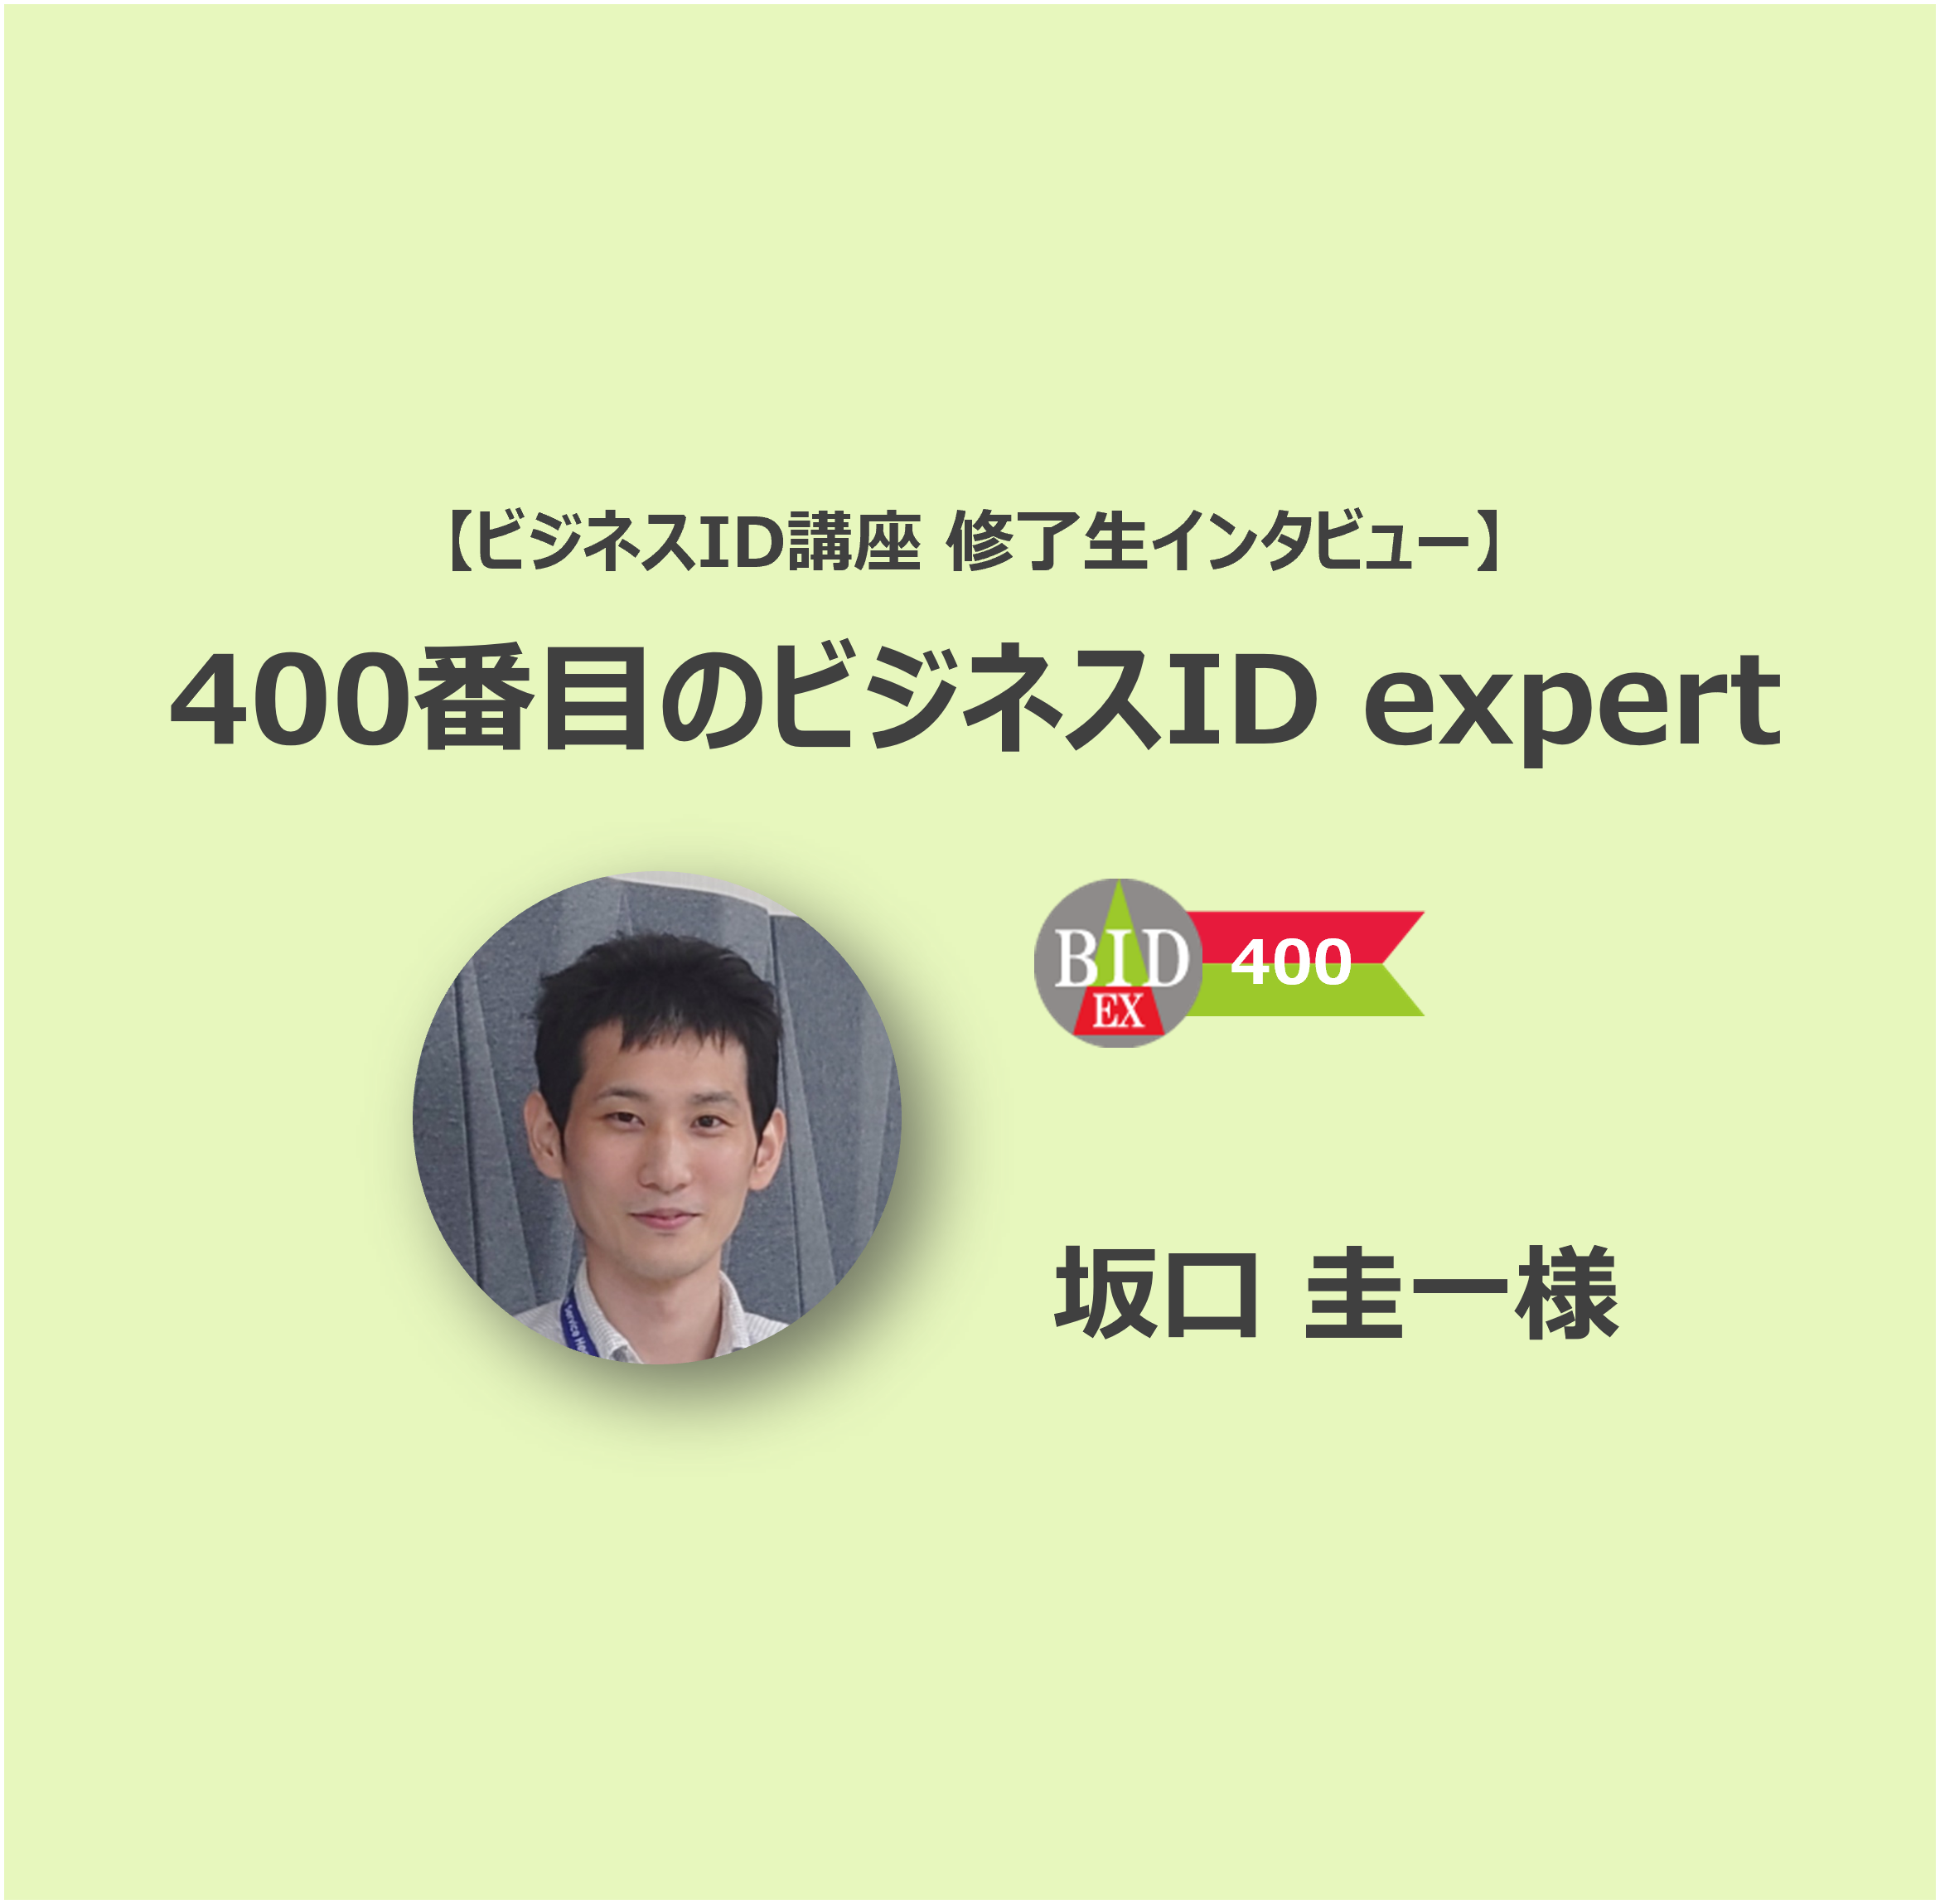 【ビジネスID講座 修了生インタビュー】400番目のビジネスID expert 株式会社NTT-ME 坂口圭一様